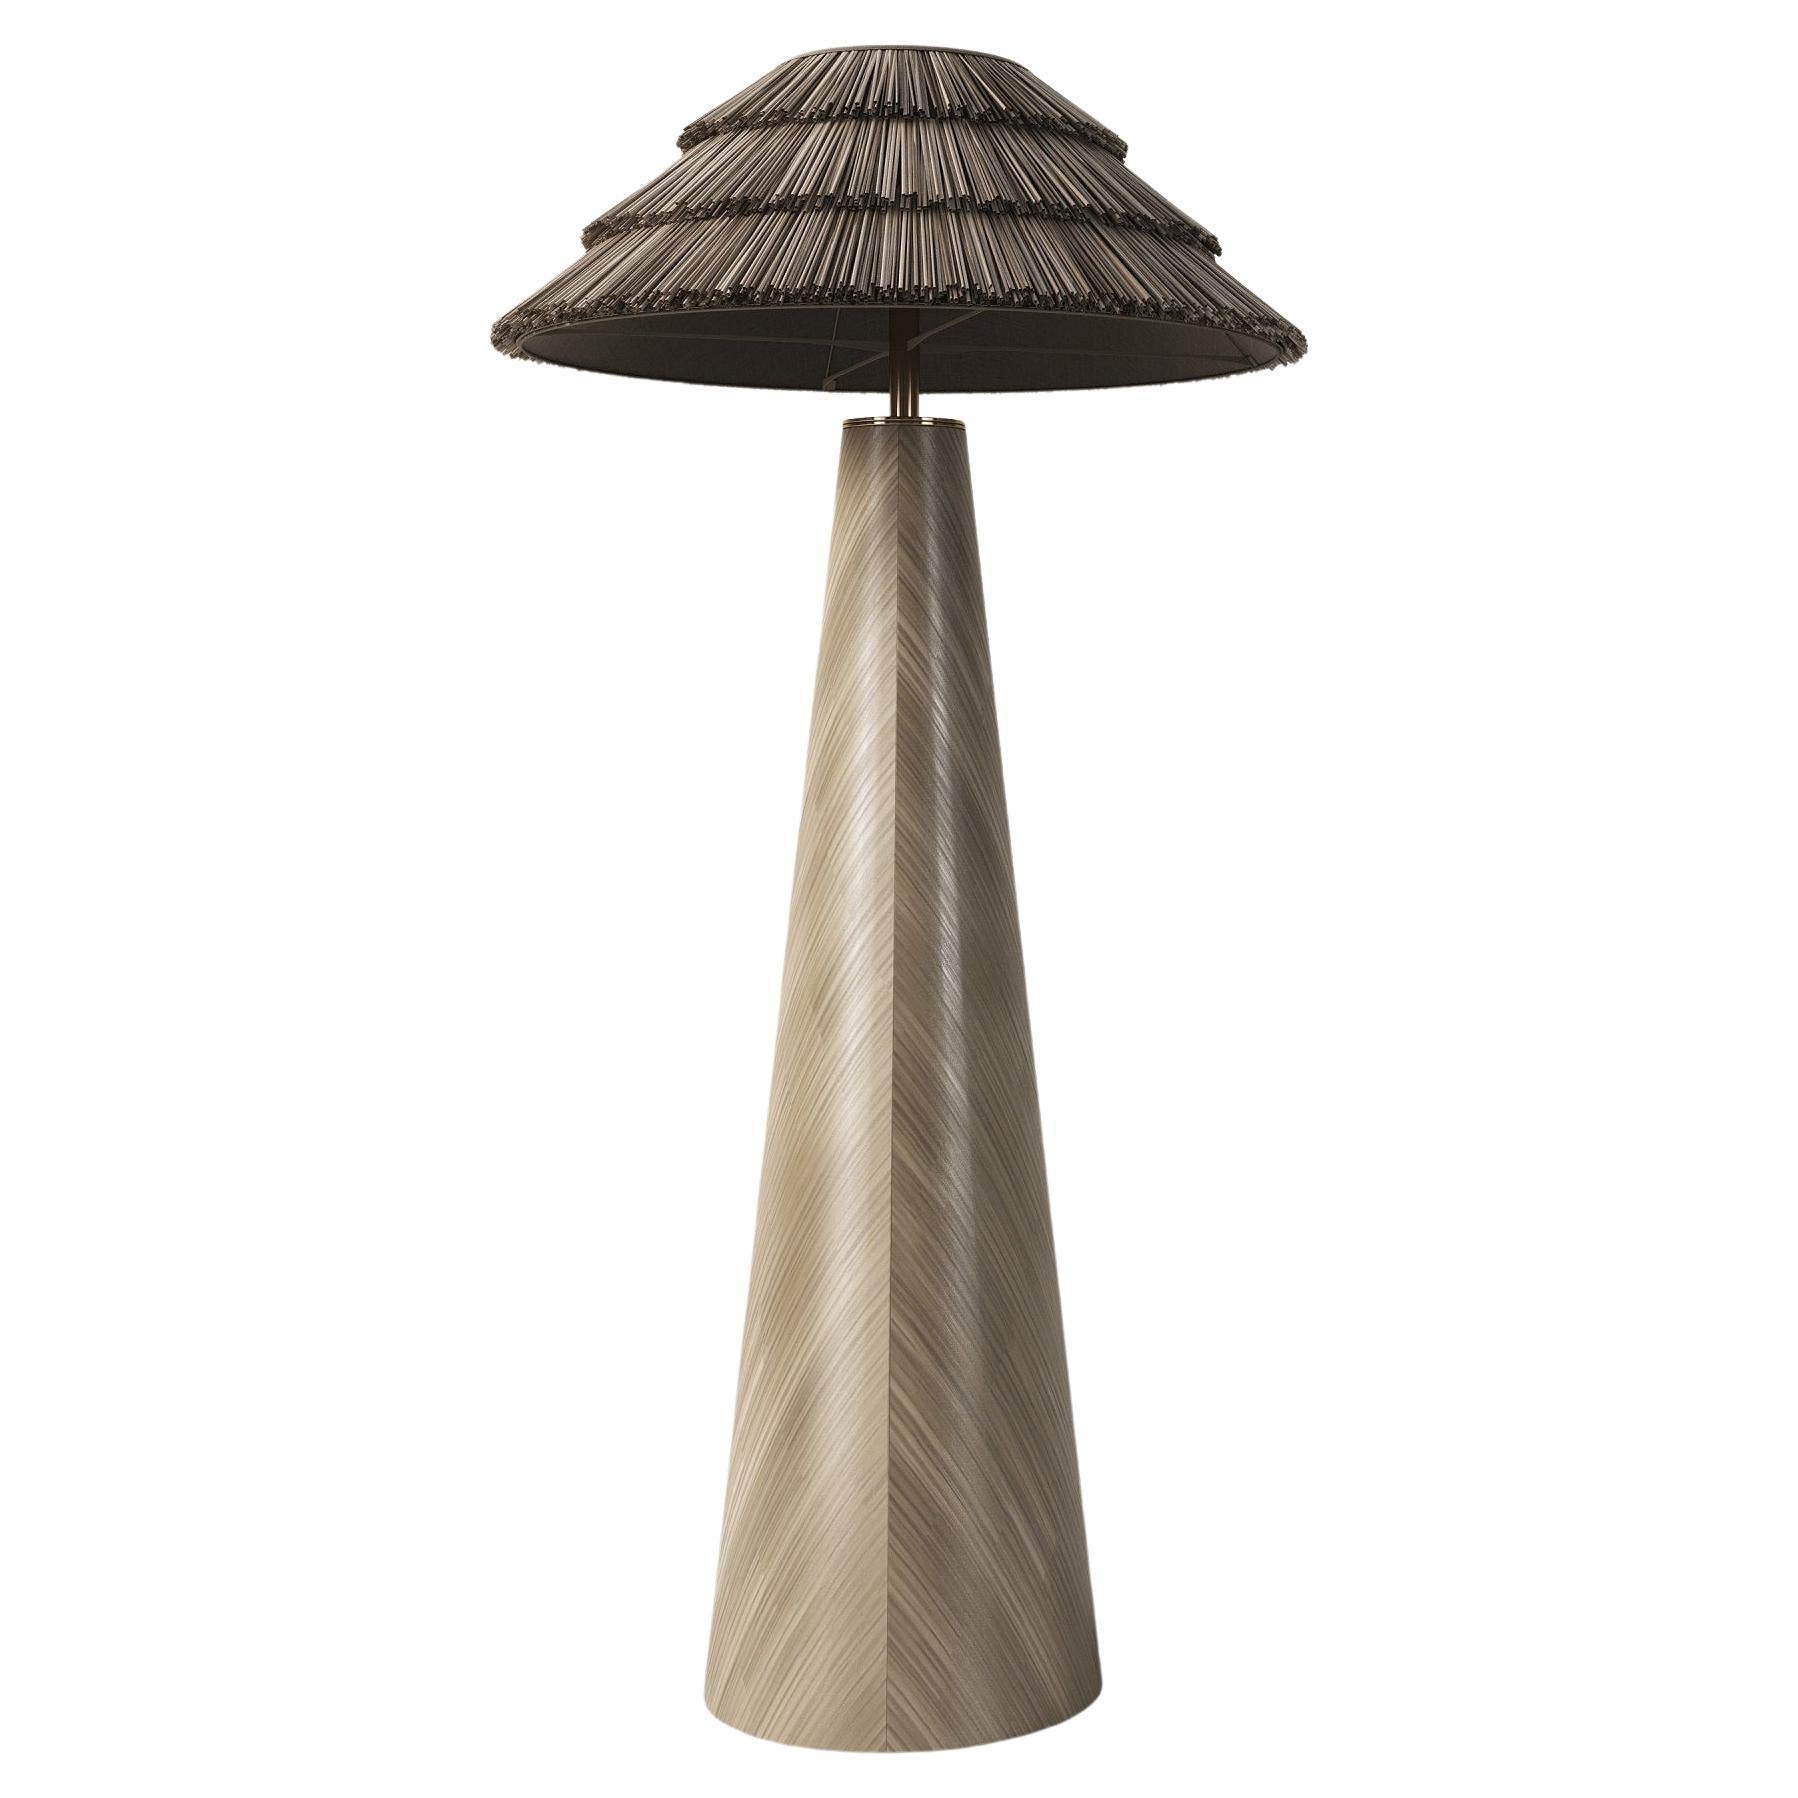 Stehlampe mit Stroh-Intarsien, minimalistische Sammlerstücke, Biomaterialien 